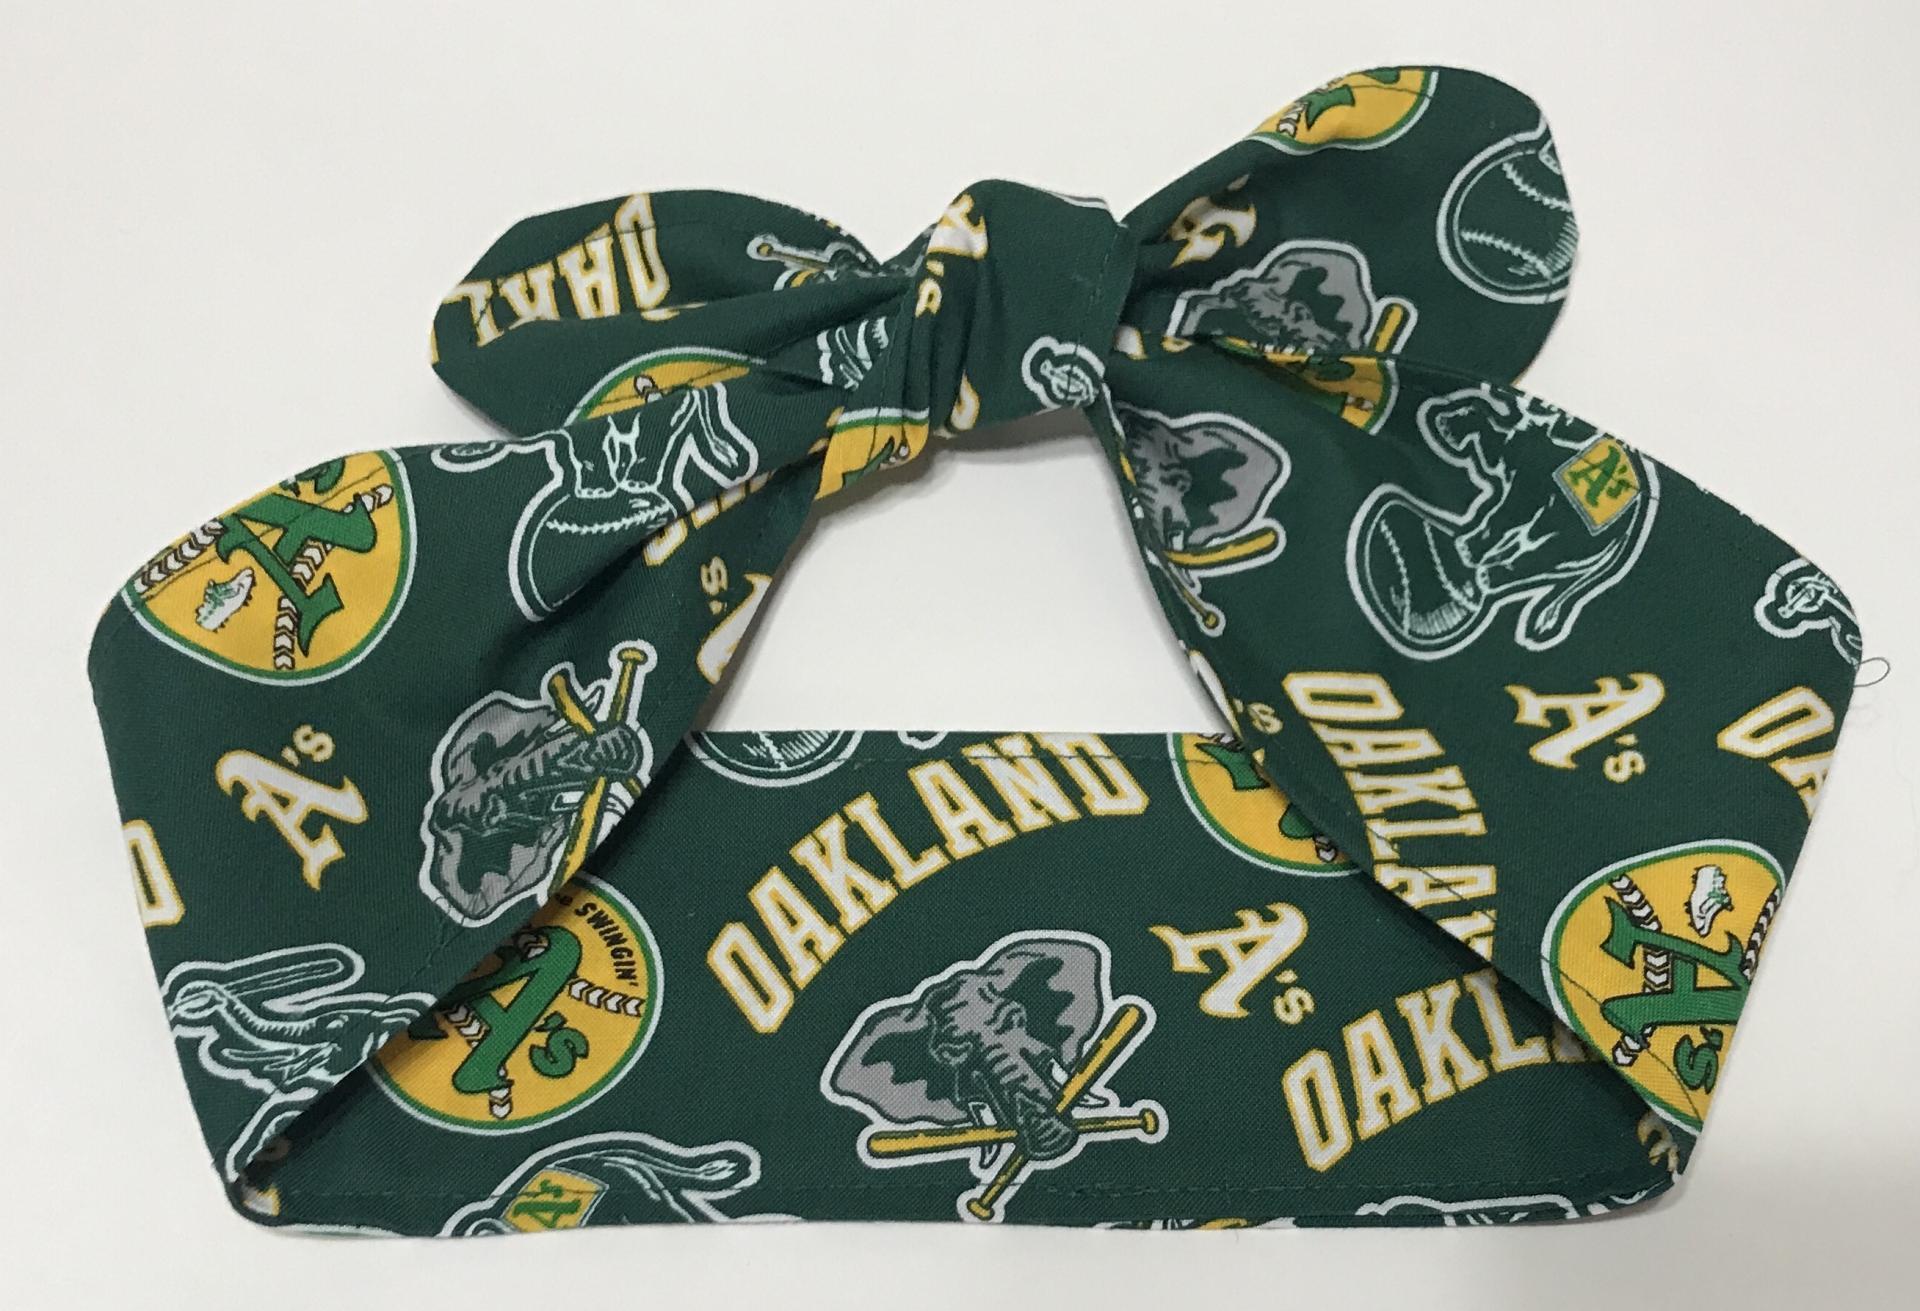 Swingin’ A’s Oakland Athletics hair tie wrap headband